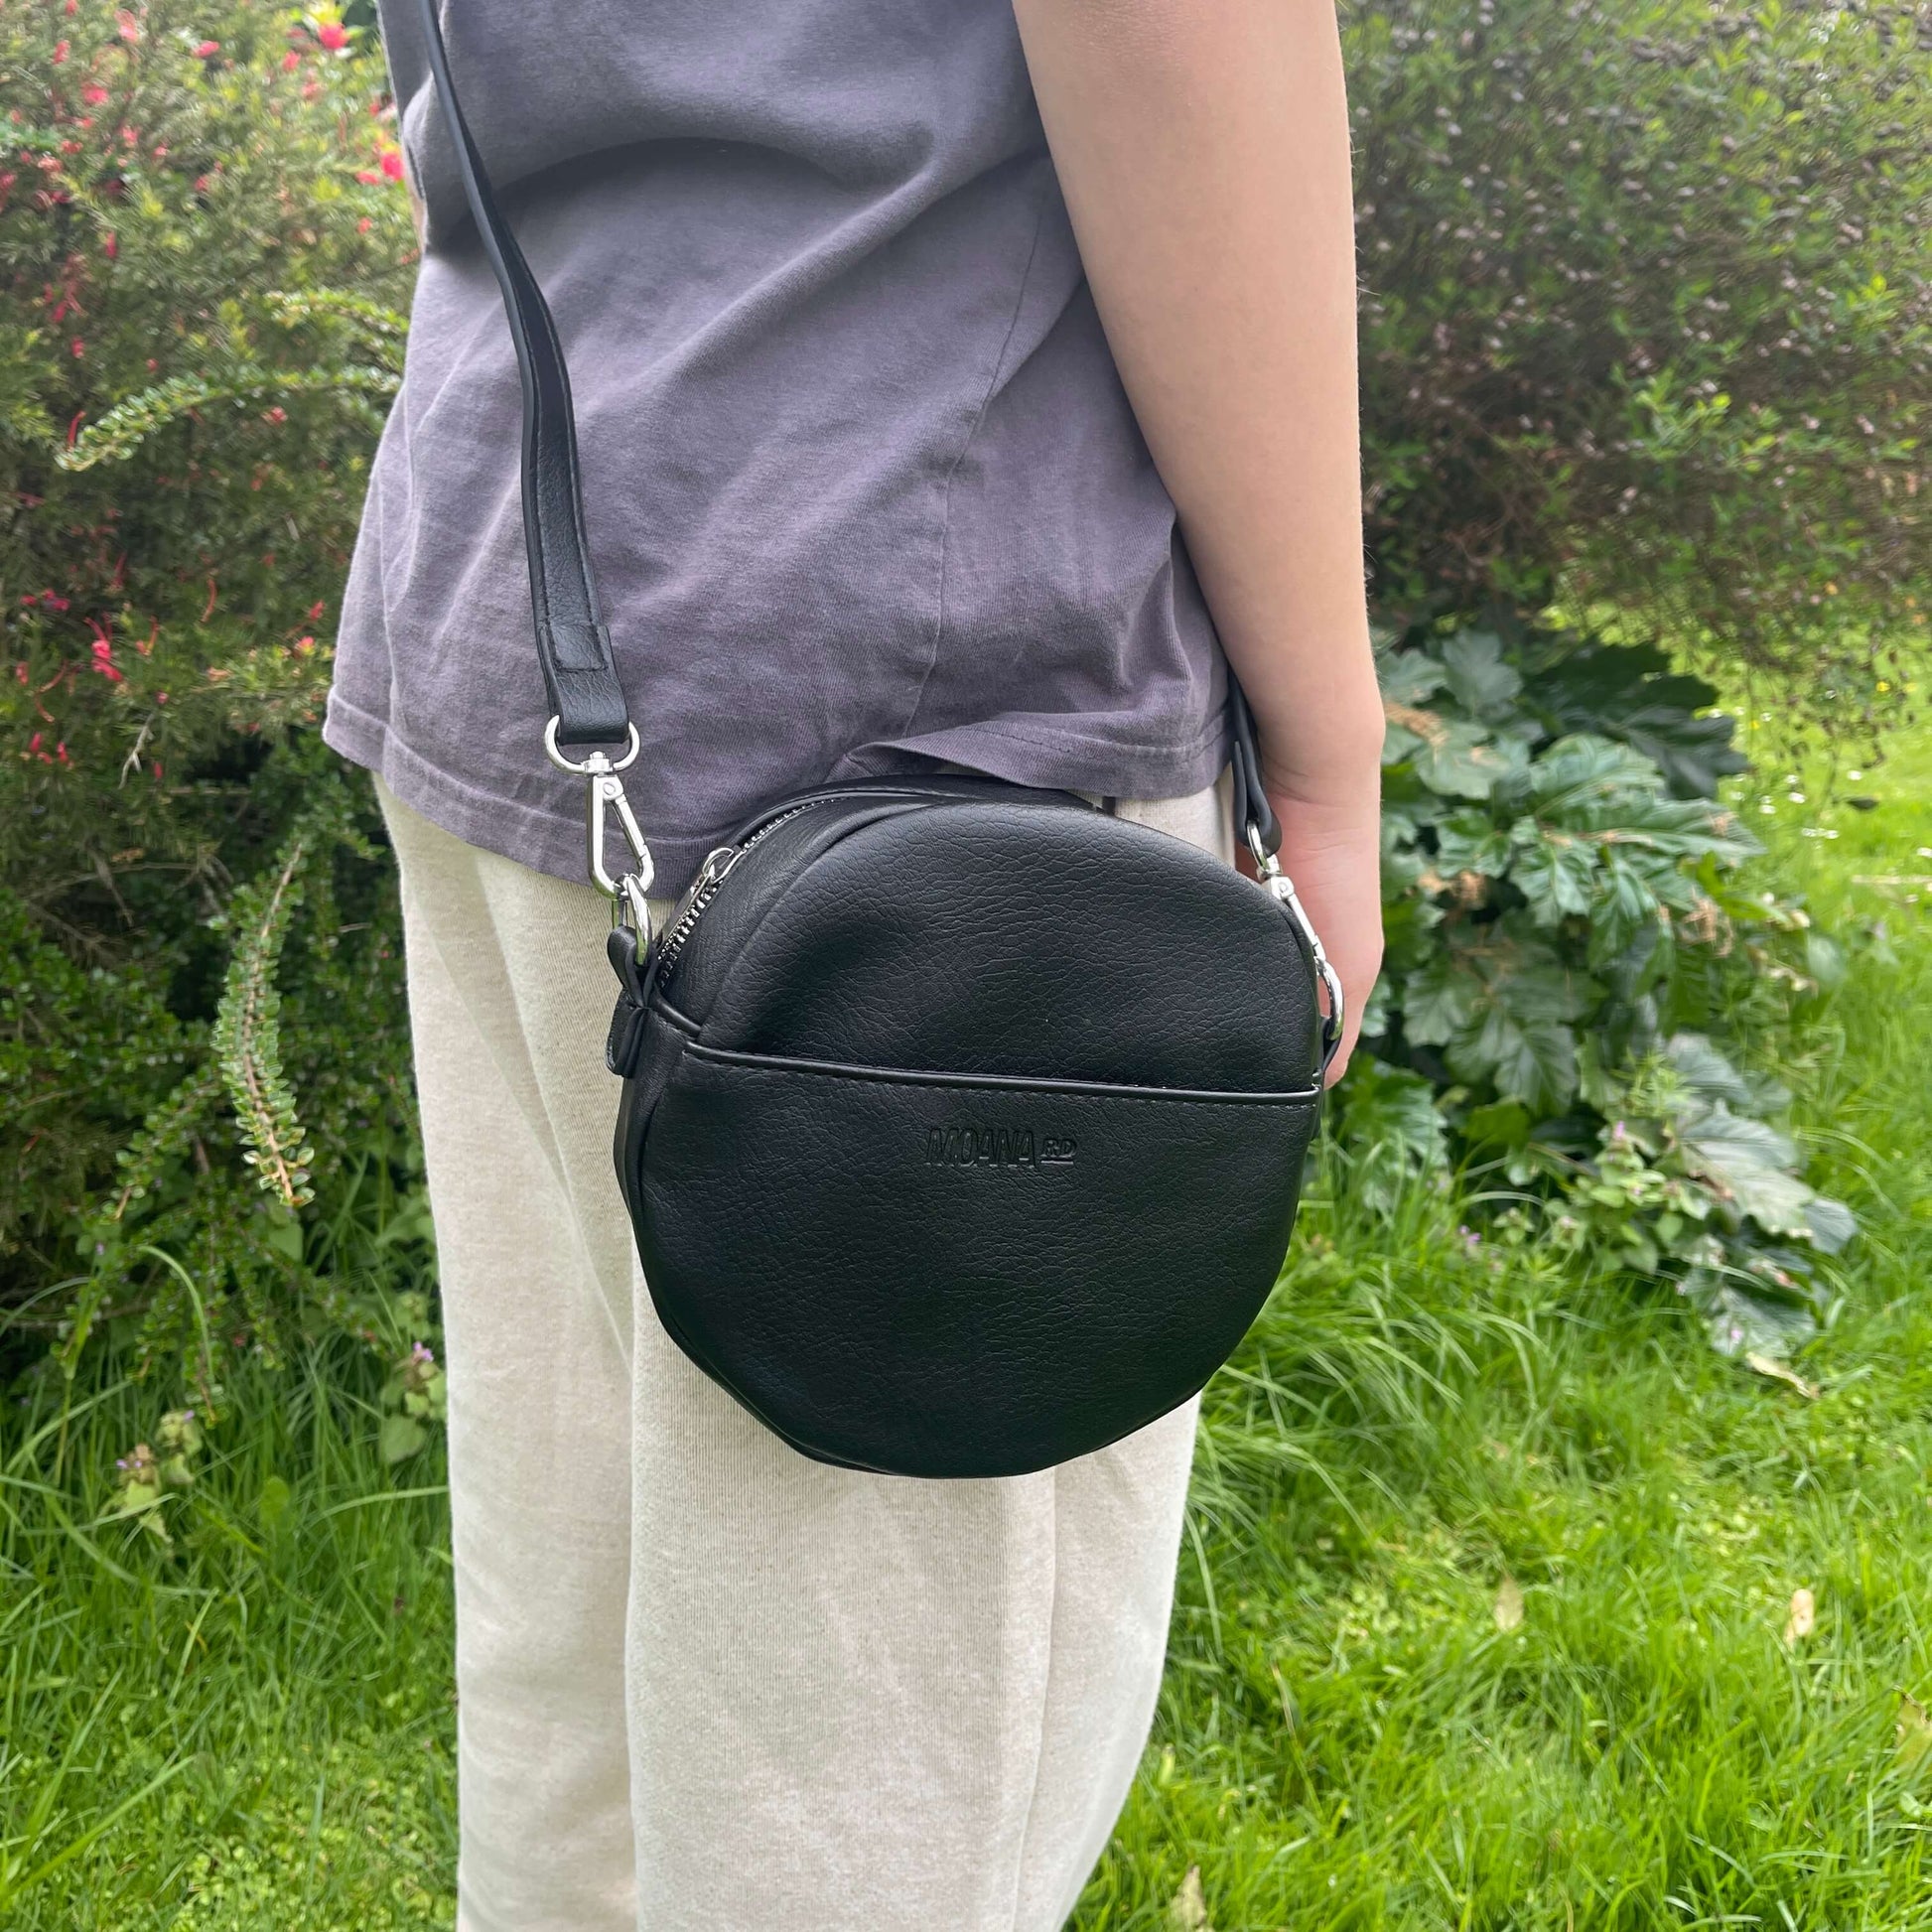 Black circular shoulder bag with front pocket.